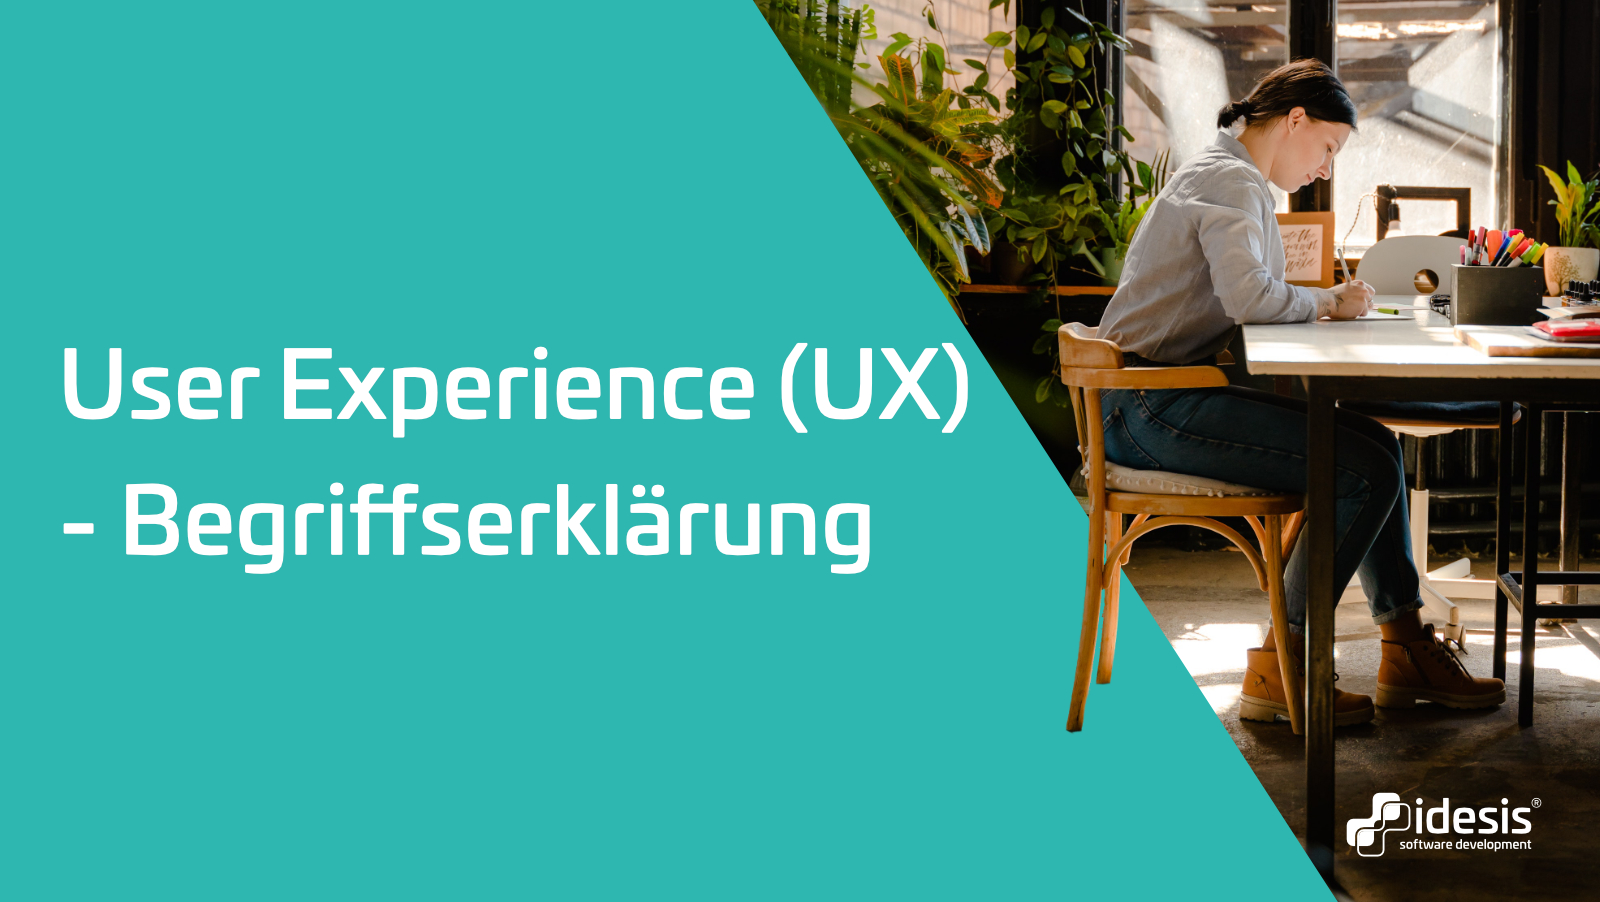 Eine Frau die auf einem Stuhl sitzt und Zeichnungen anfertigt neben dem Titel: User Experience (UX) Begriffserklärung